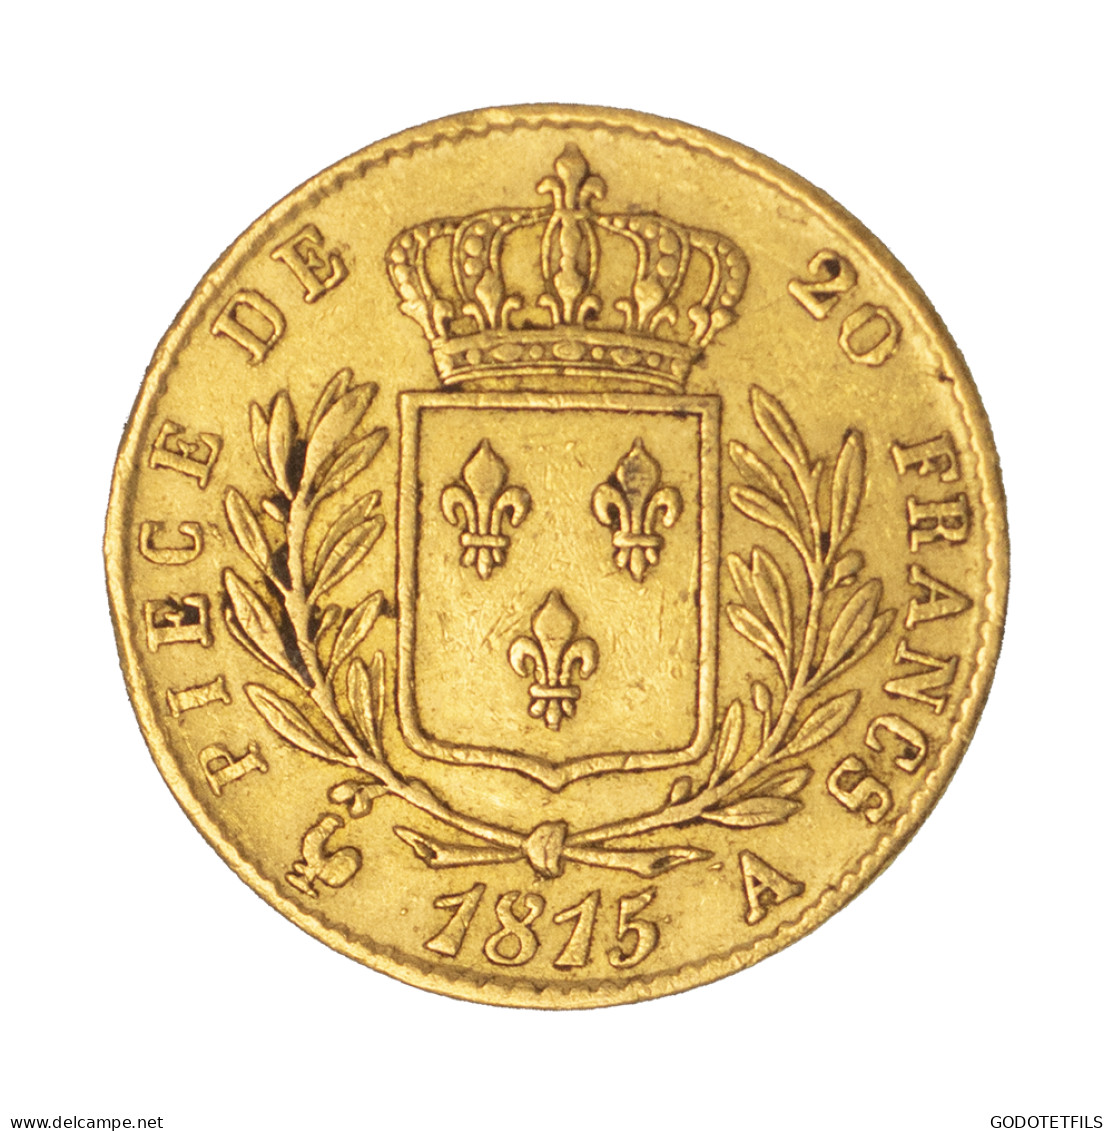 Louis XVIII -20 Francs 1815 Paris - 20 Francs (gold)